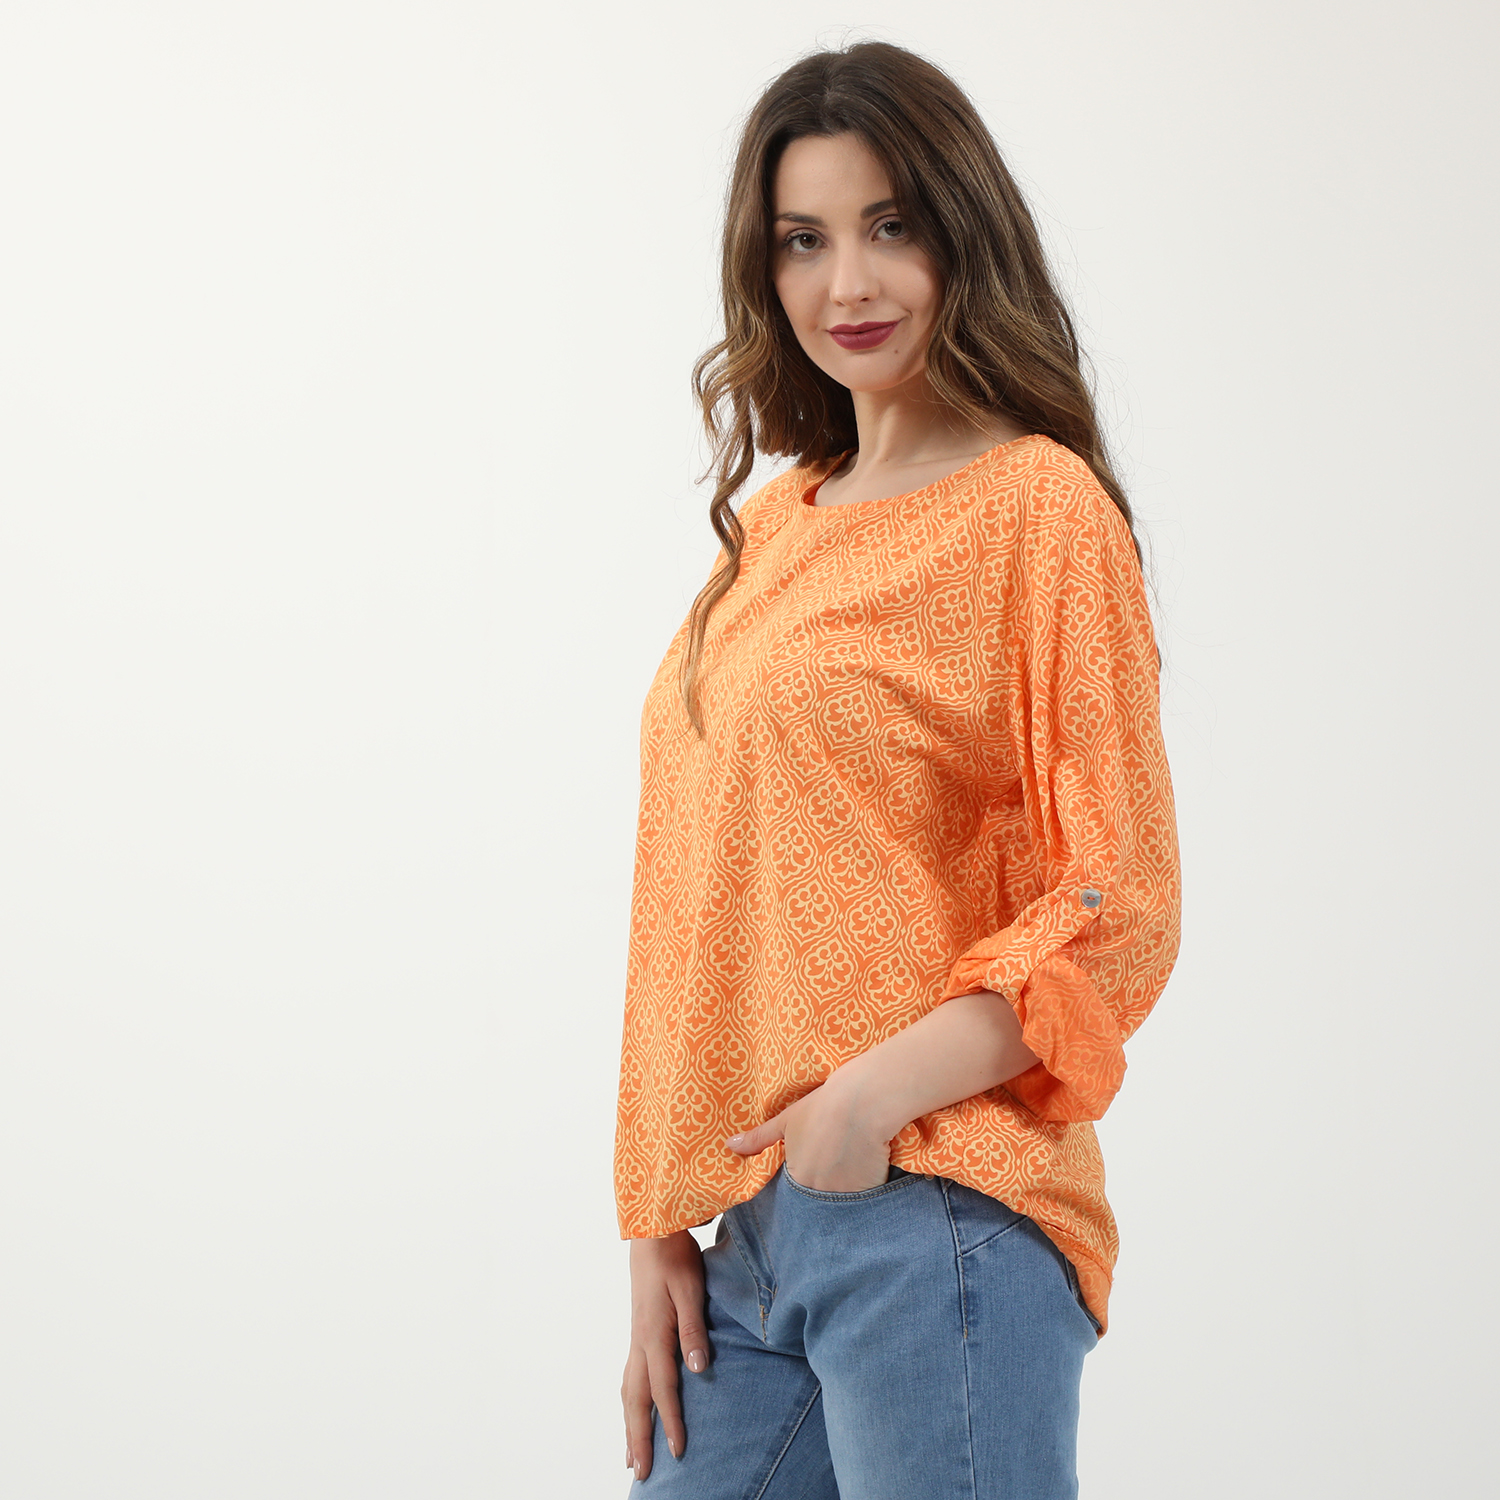 Γυναικεία/Ρούχα/Μπλούζες/Μακρυμάνικες 'ALE - Γυναικεία τουνίκ 'ALE πορτοκαλί